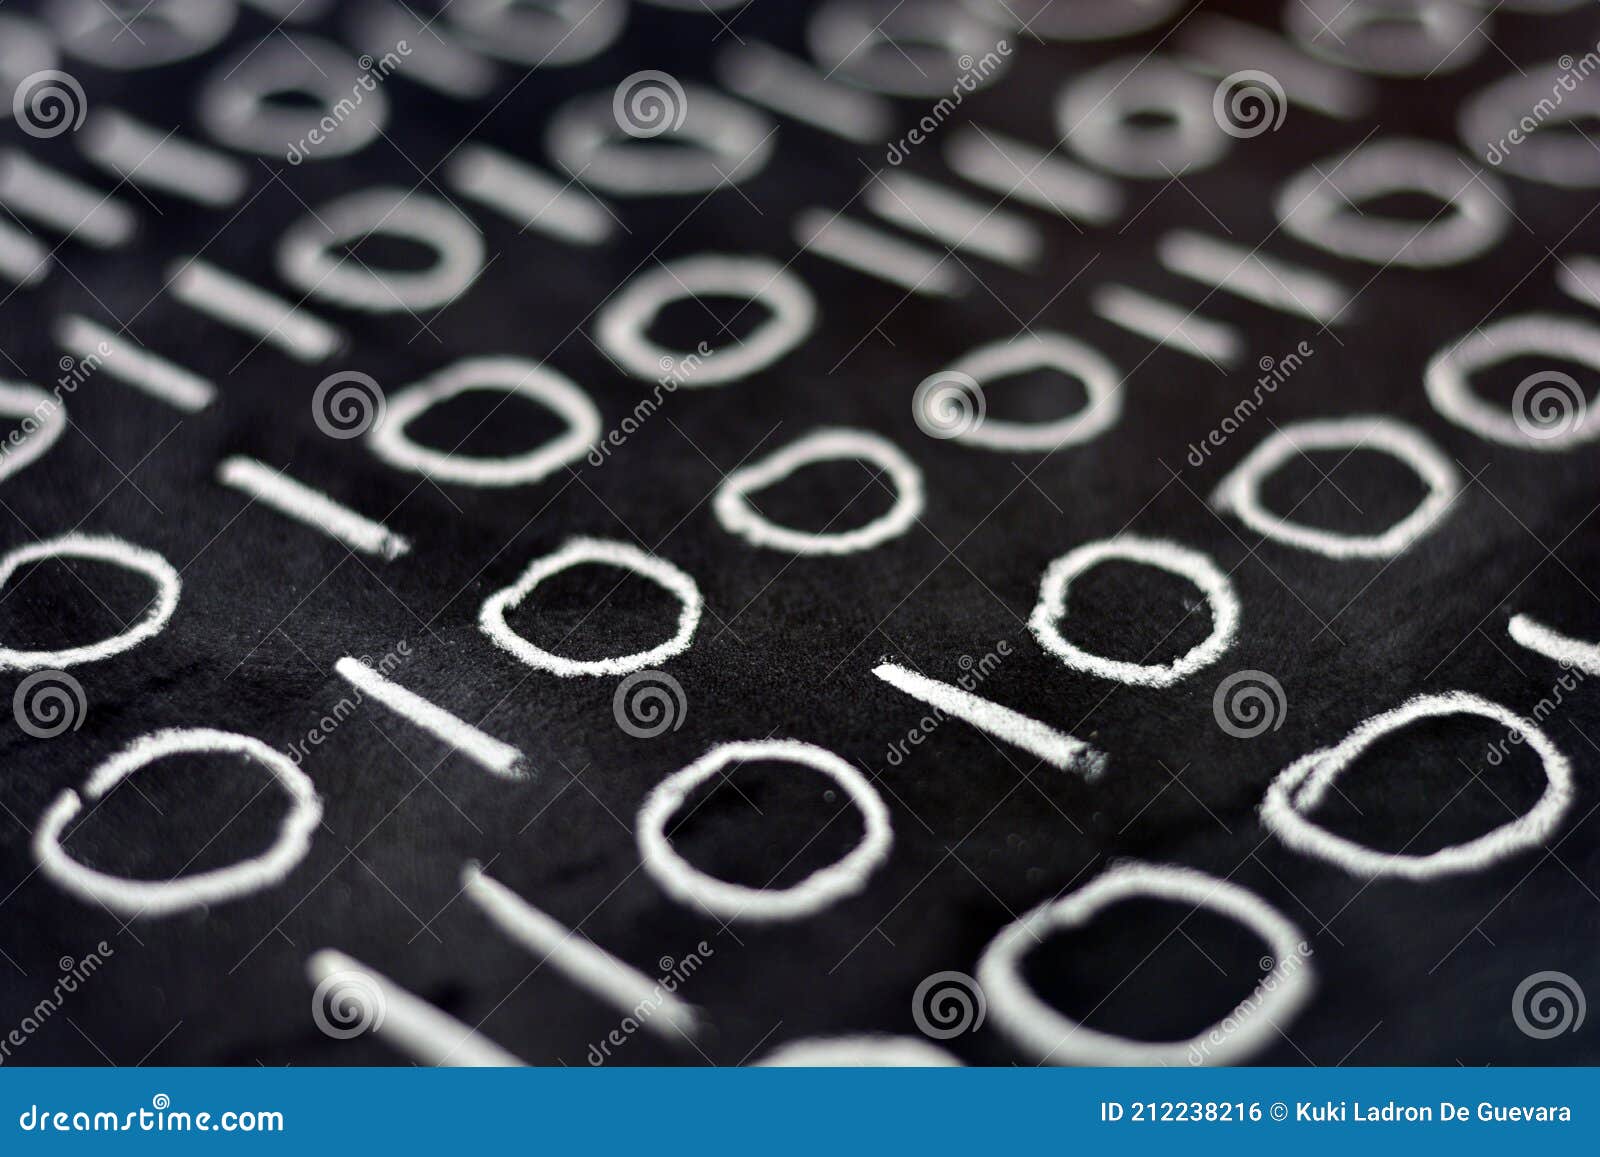 zeros and ones written on a blackboard